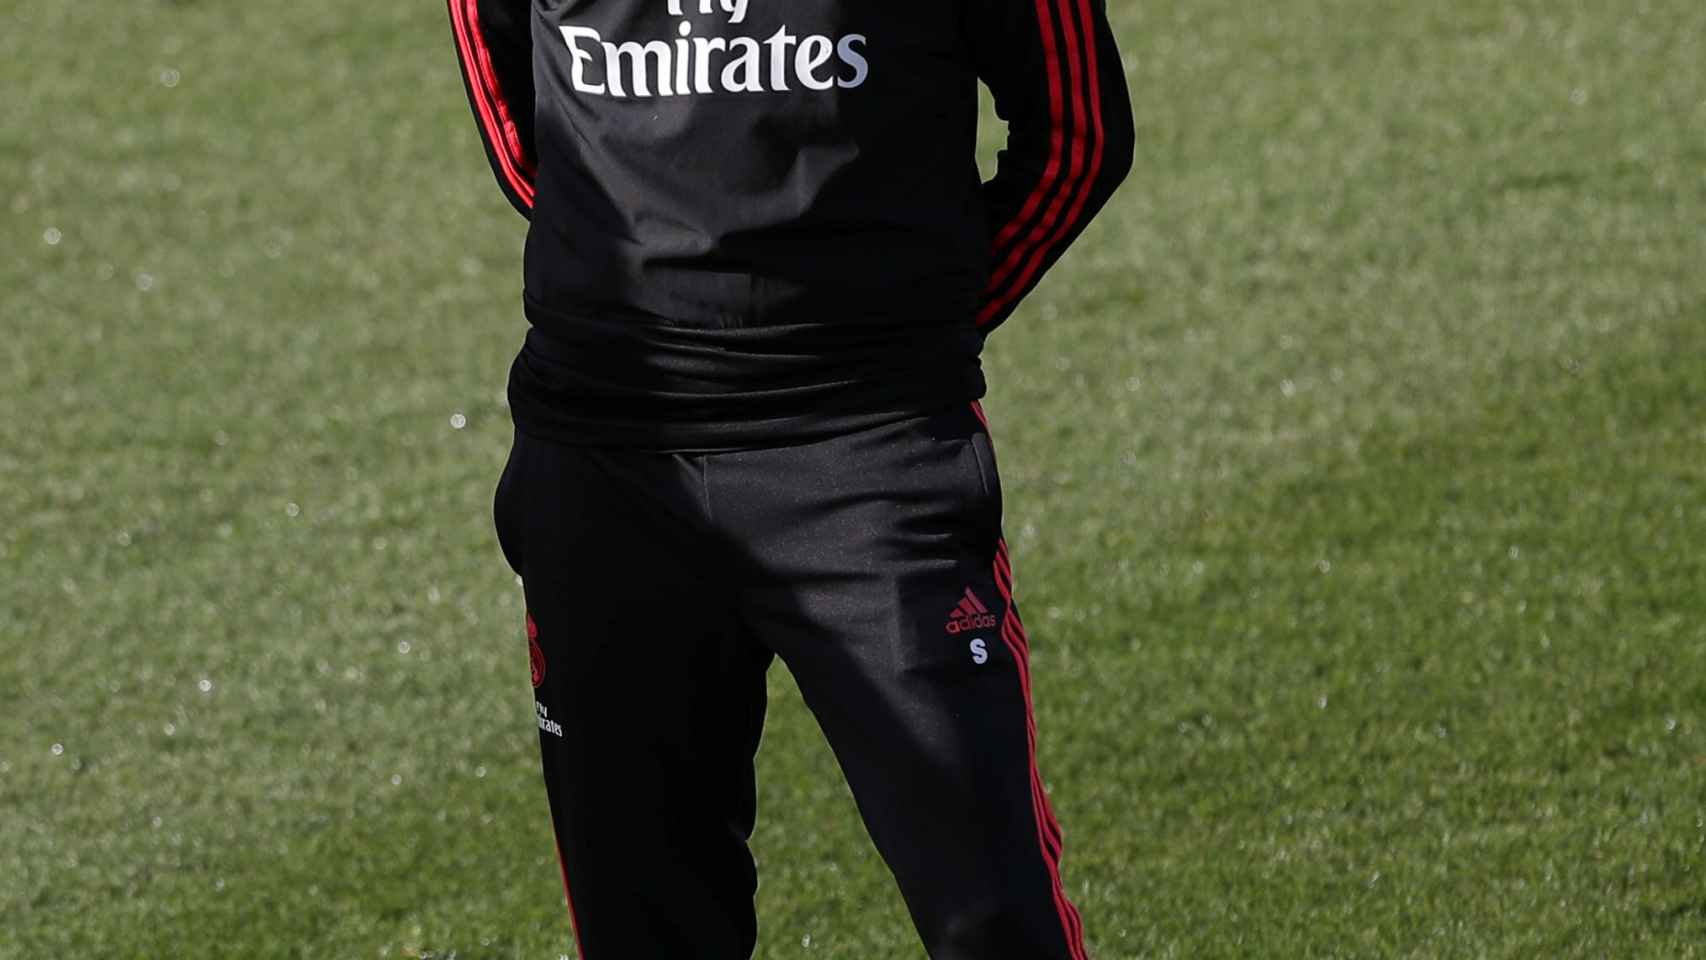 Solari durante un entrenamiento del Real Madrid